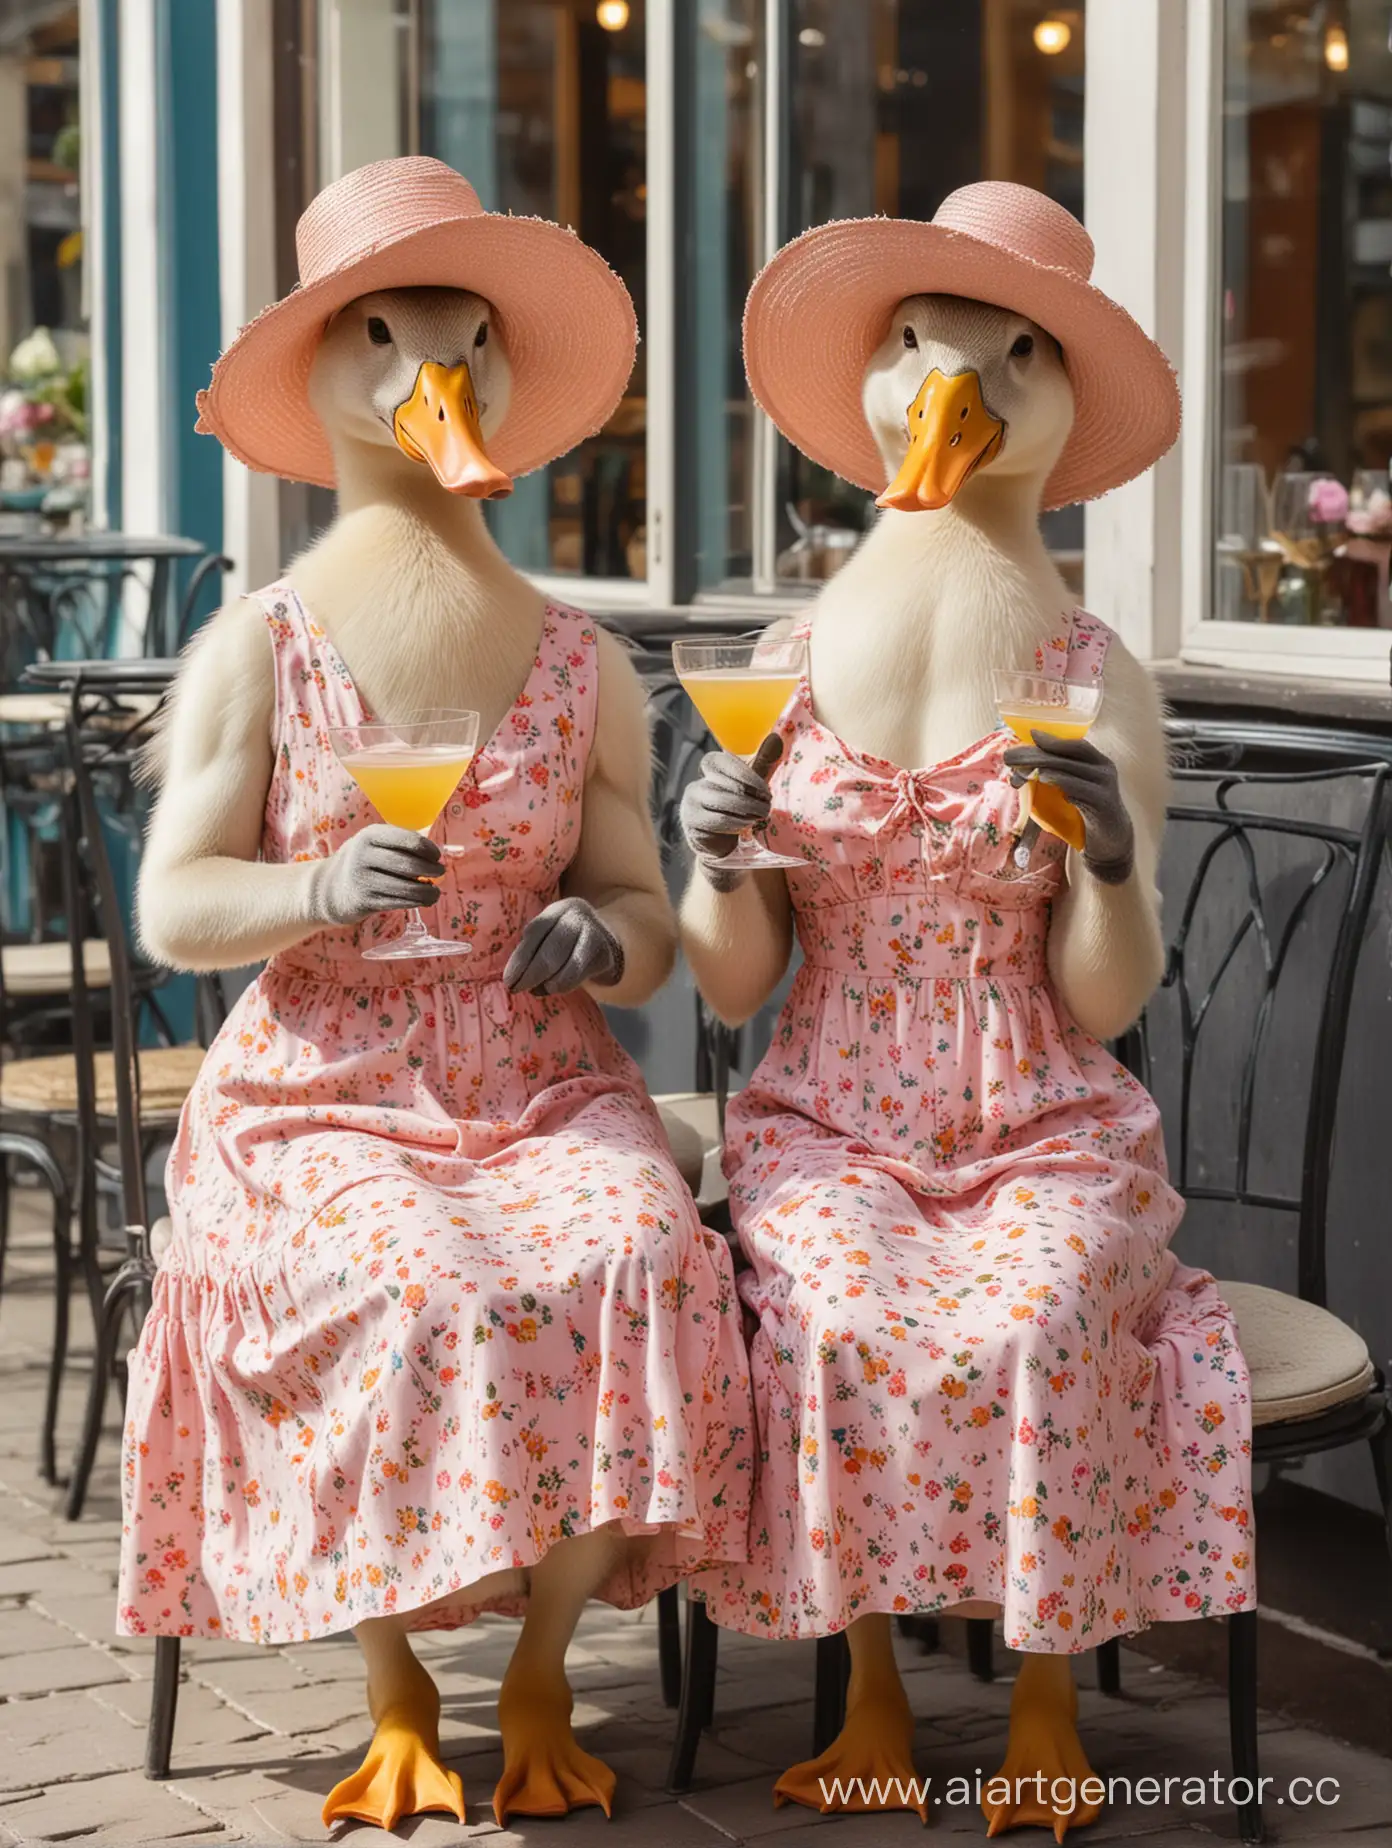 Две худые утки в человеческих женских сарафанах, две утки в шляпках и платьях , утки протягивают бокал с  коктейлем, сидят на фоне ресторана, нежные весенние